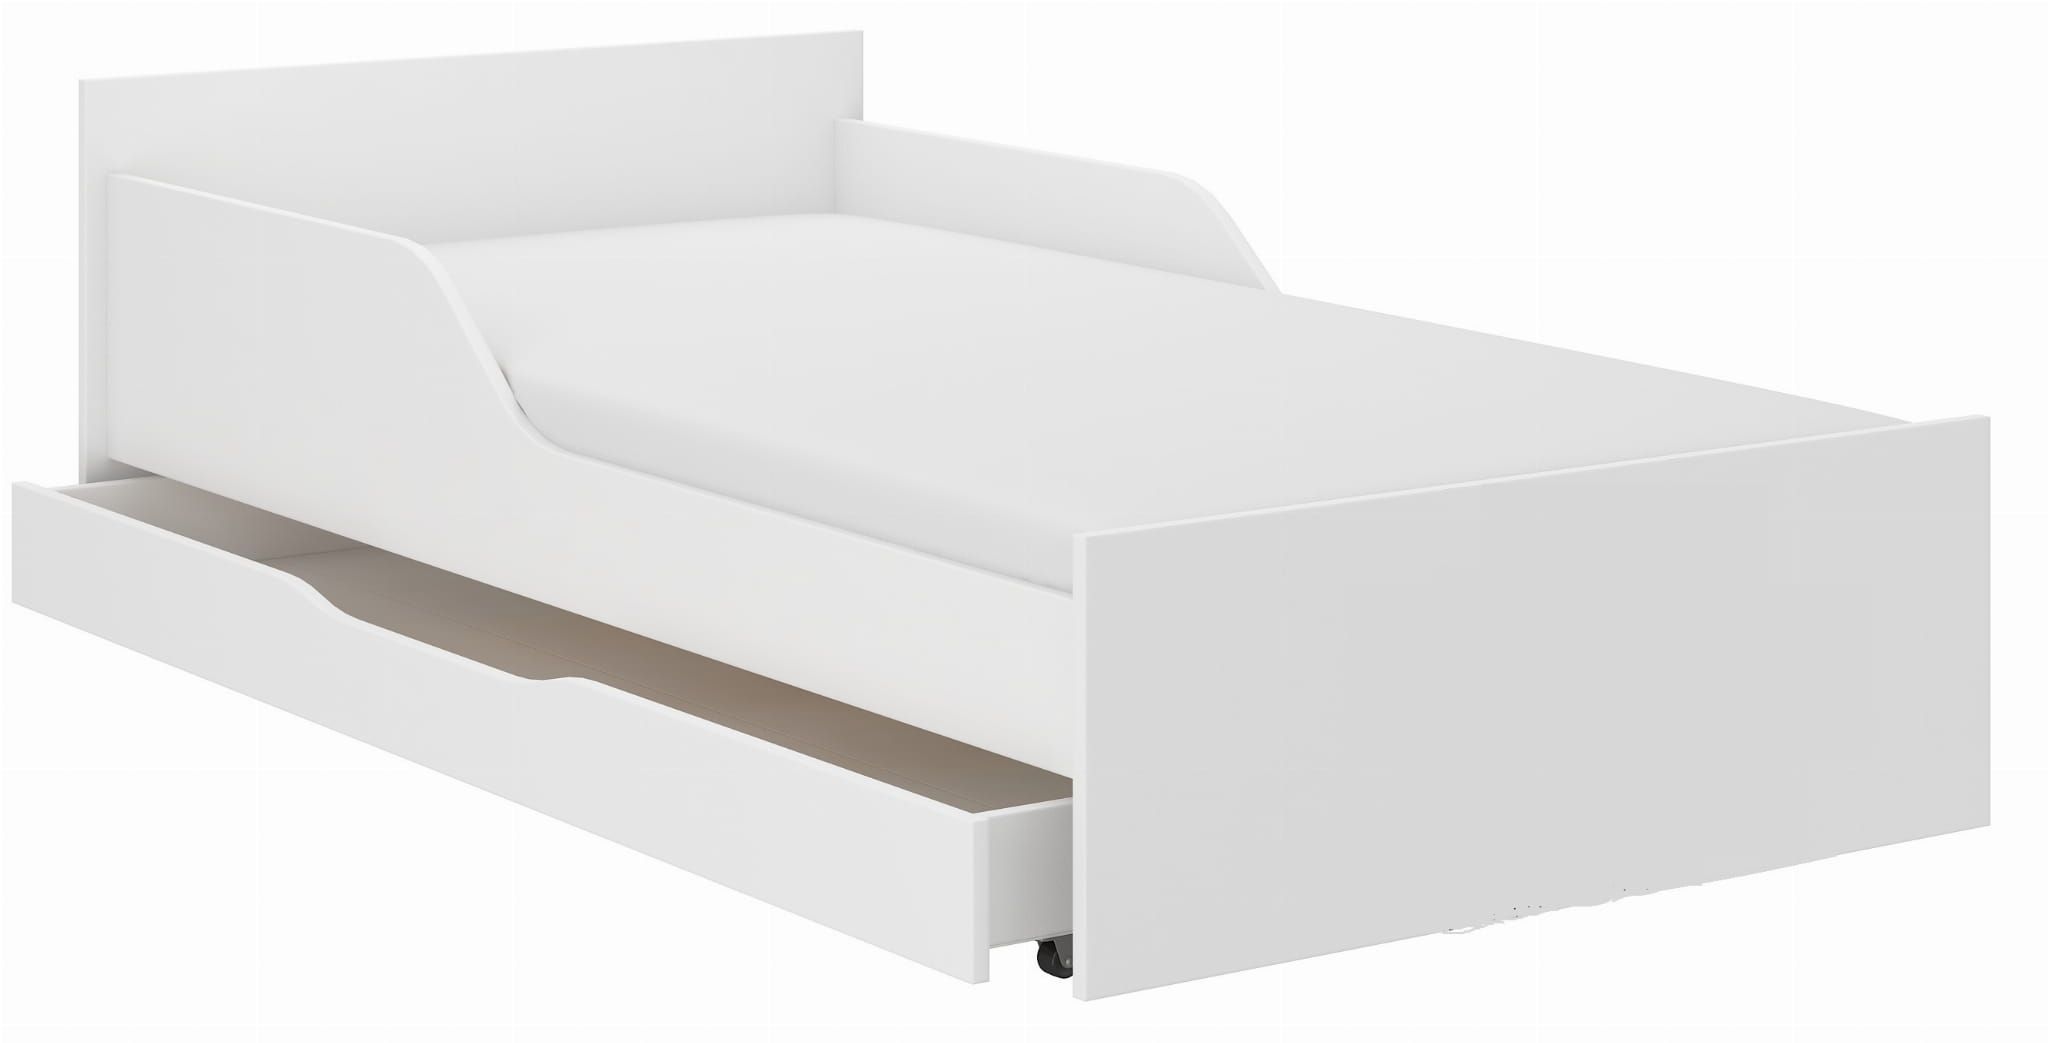 Detská posteľ FILIP - BIELA 180x90 cm